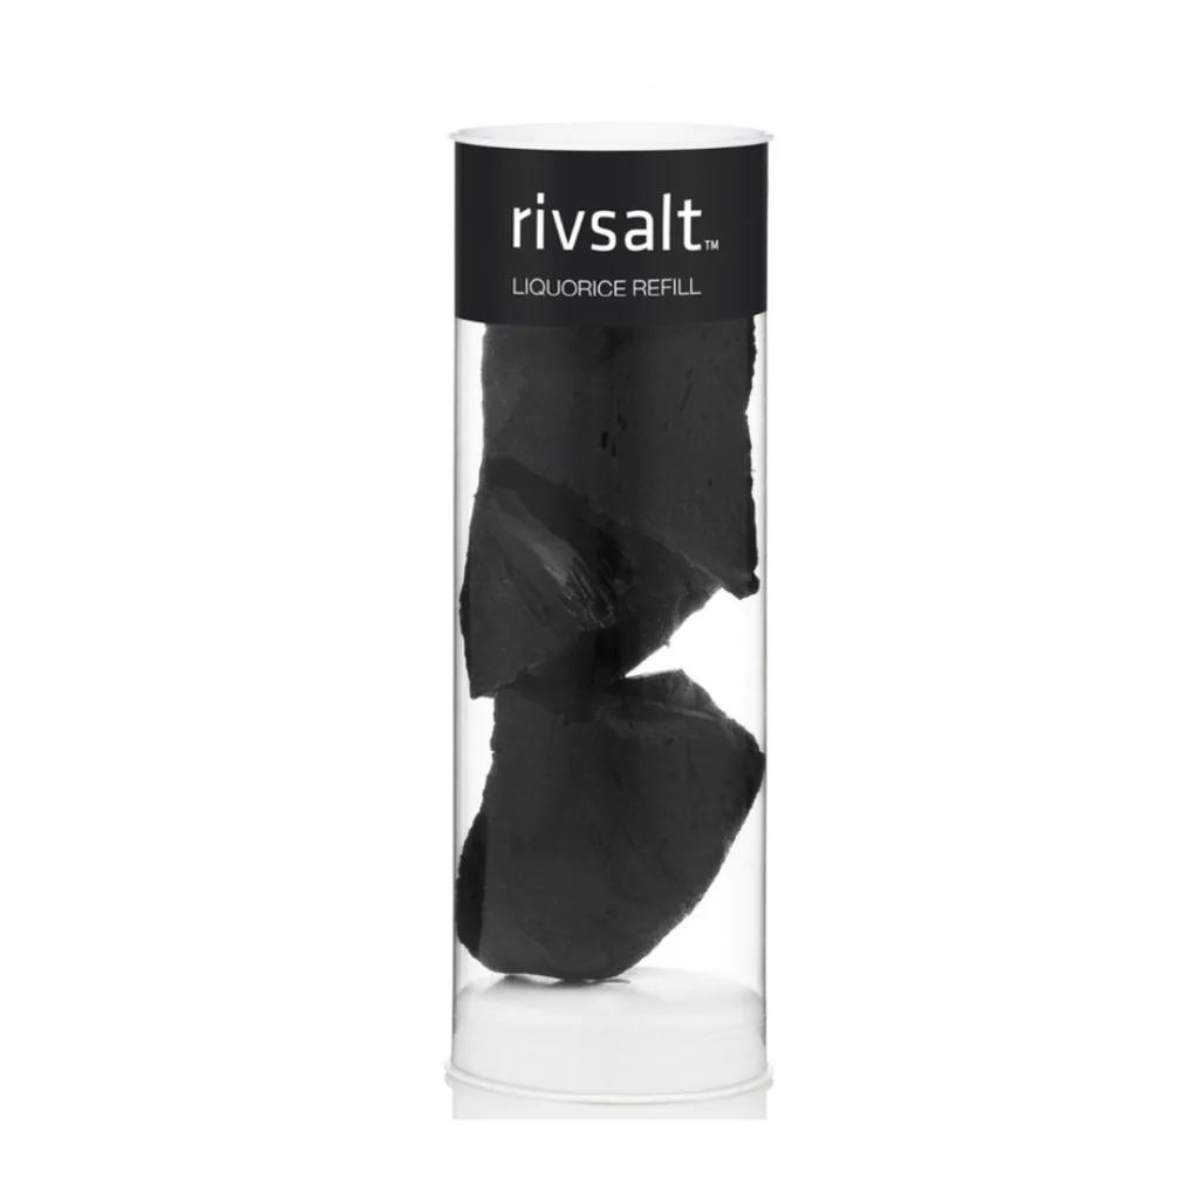 RIVSALT - Premium Raw 3pc Liquorice Refill